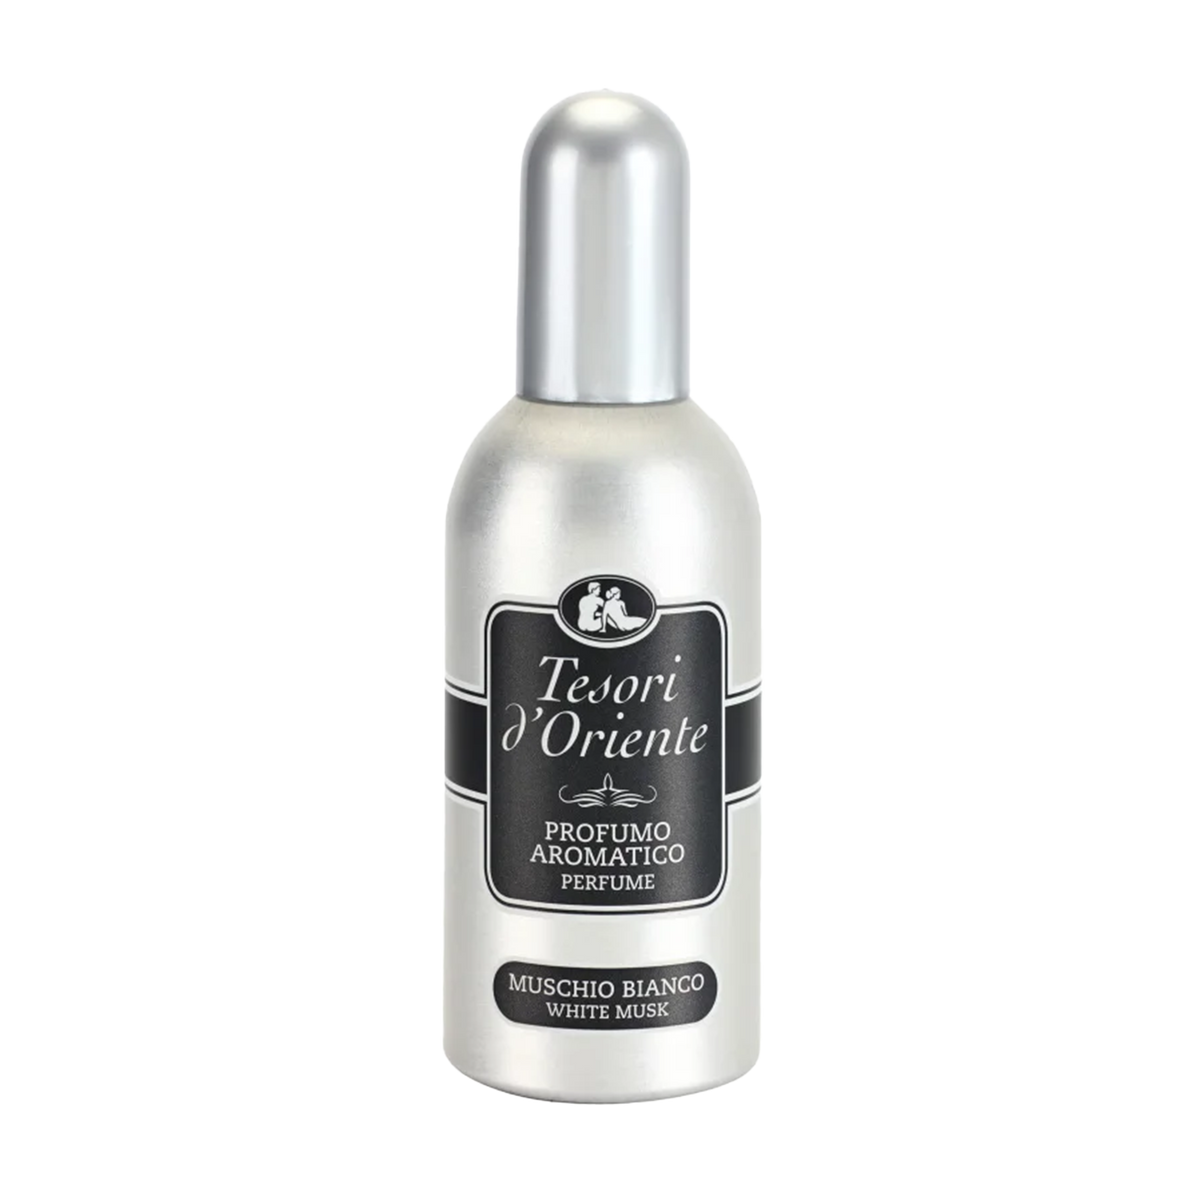 Oostelijke schatten aromatische parfum deodorant witte musk 100 ml